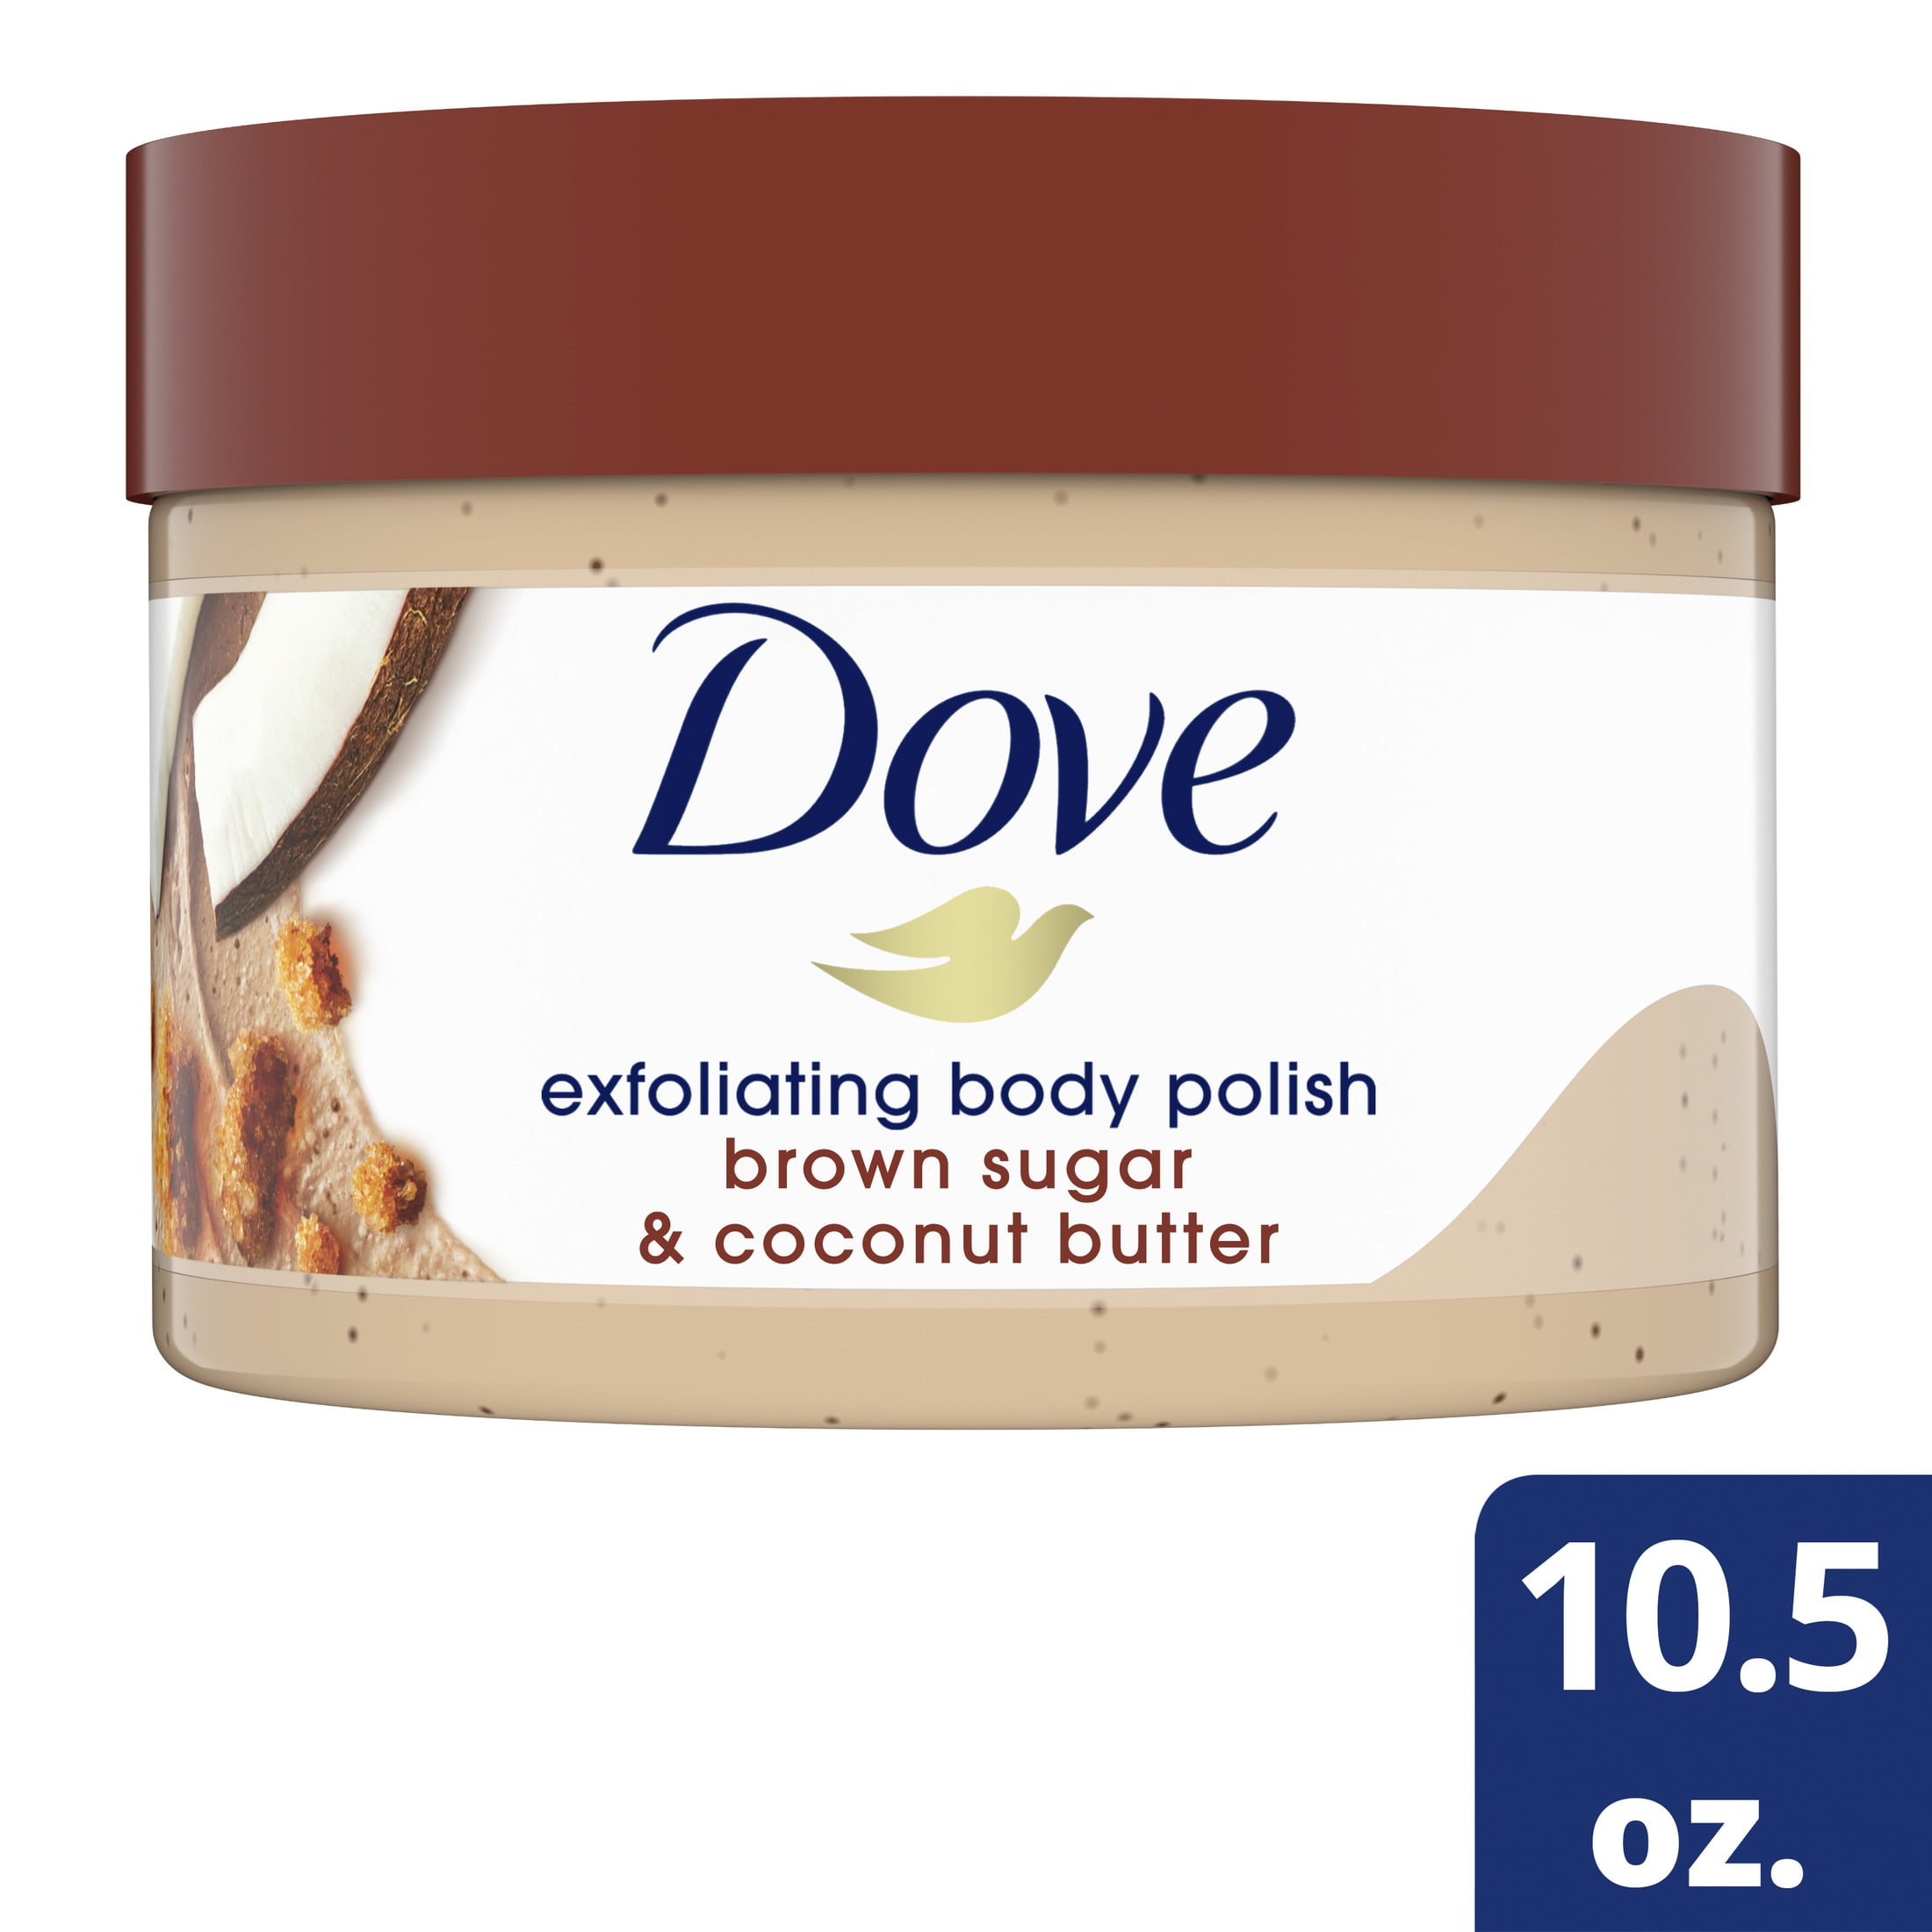 Dove Exfoliating Body Polish Scrub Brown Sugar & Coconut Butter, 10.5 oz